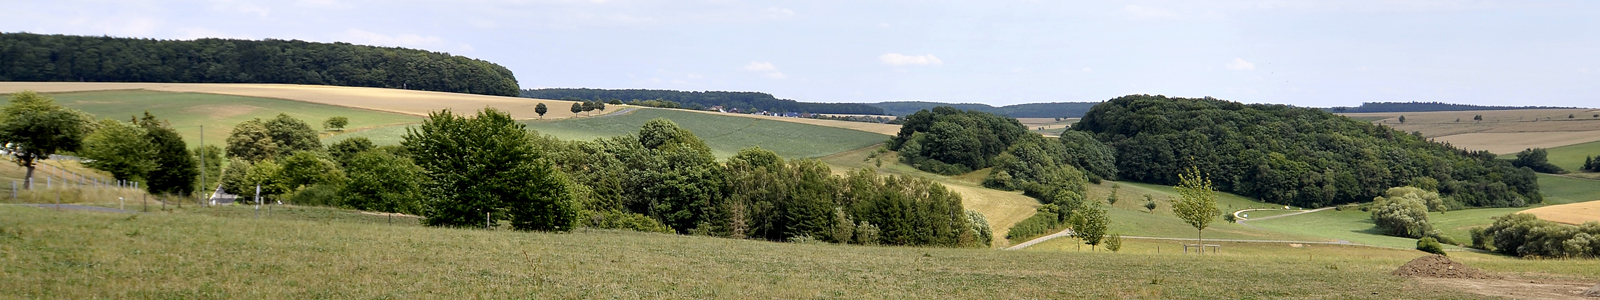 Landschaft mit Mittelgebirge im Hintergrund ©DLR